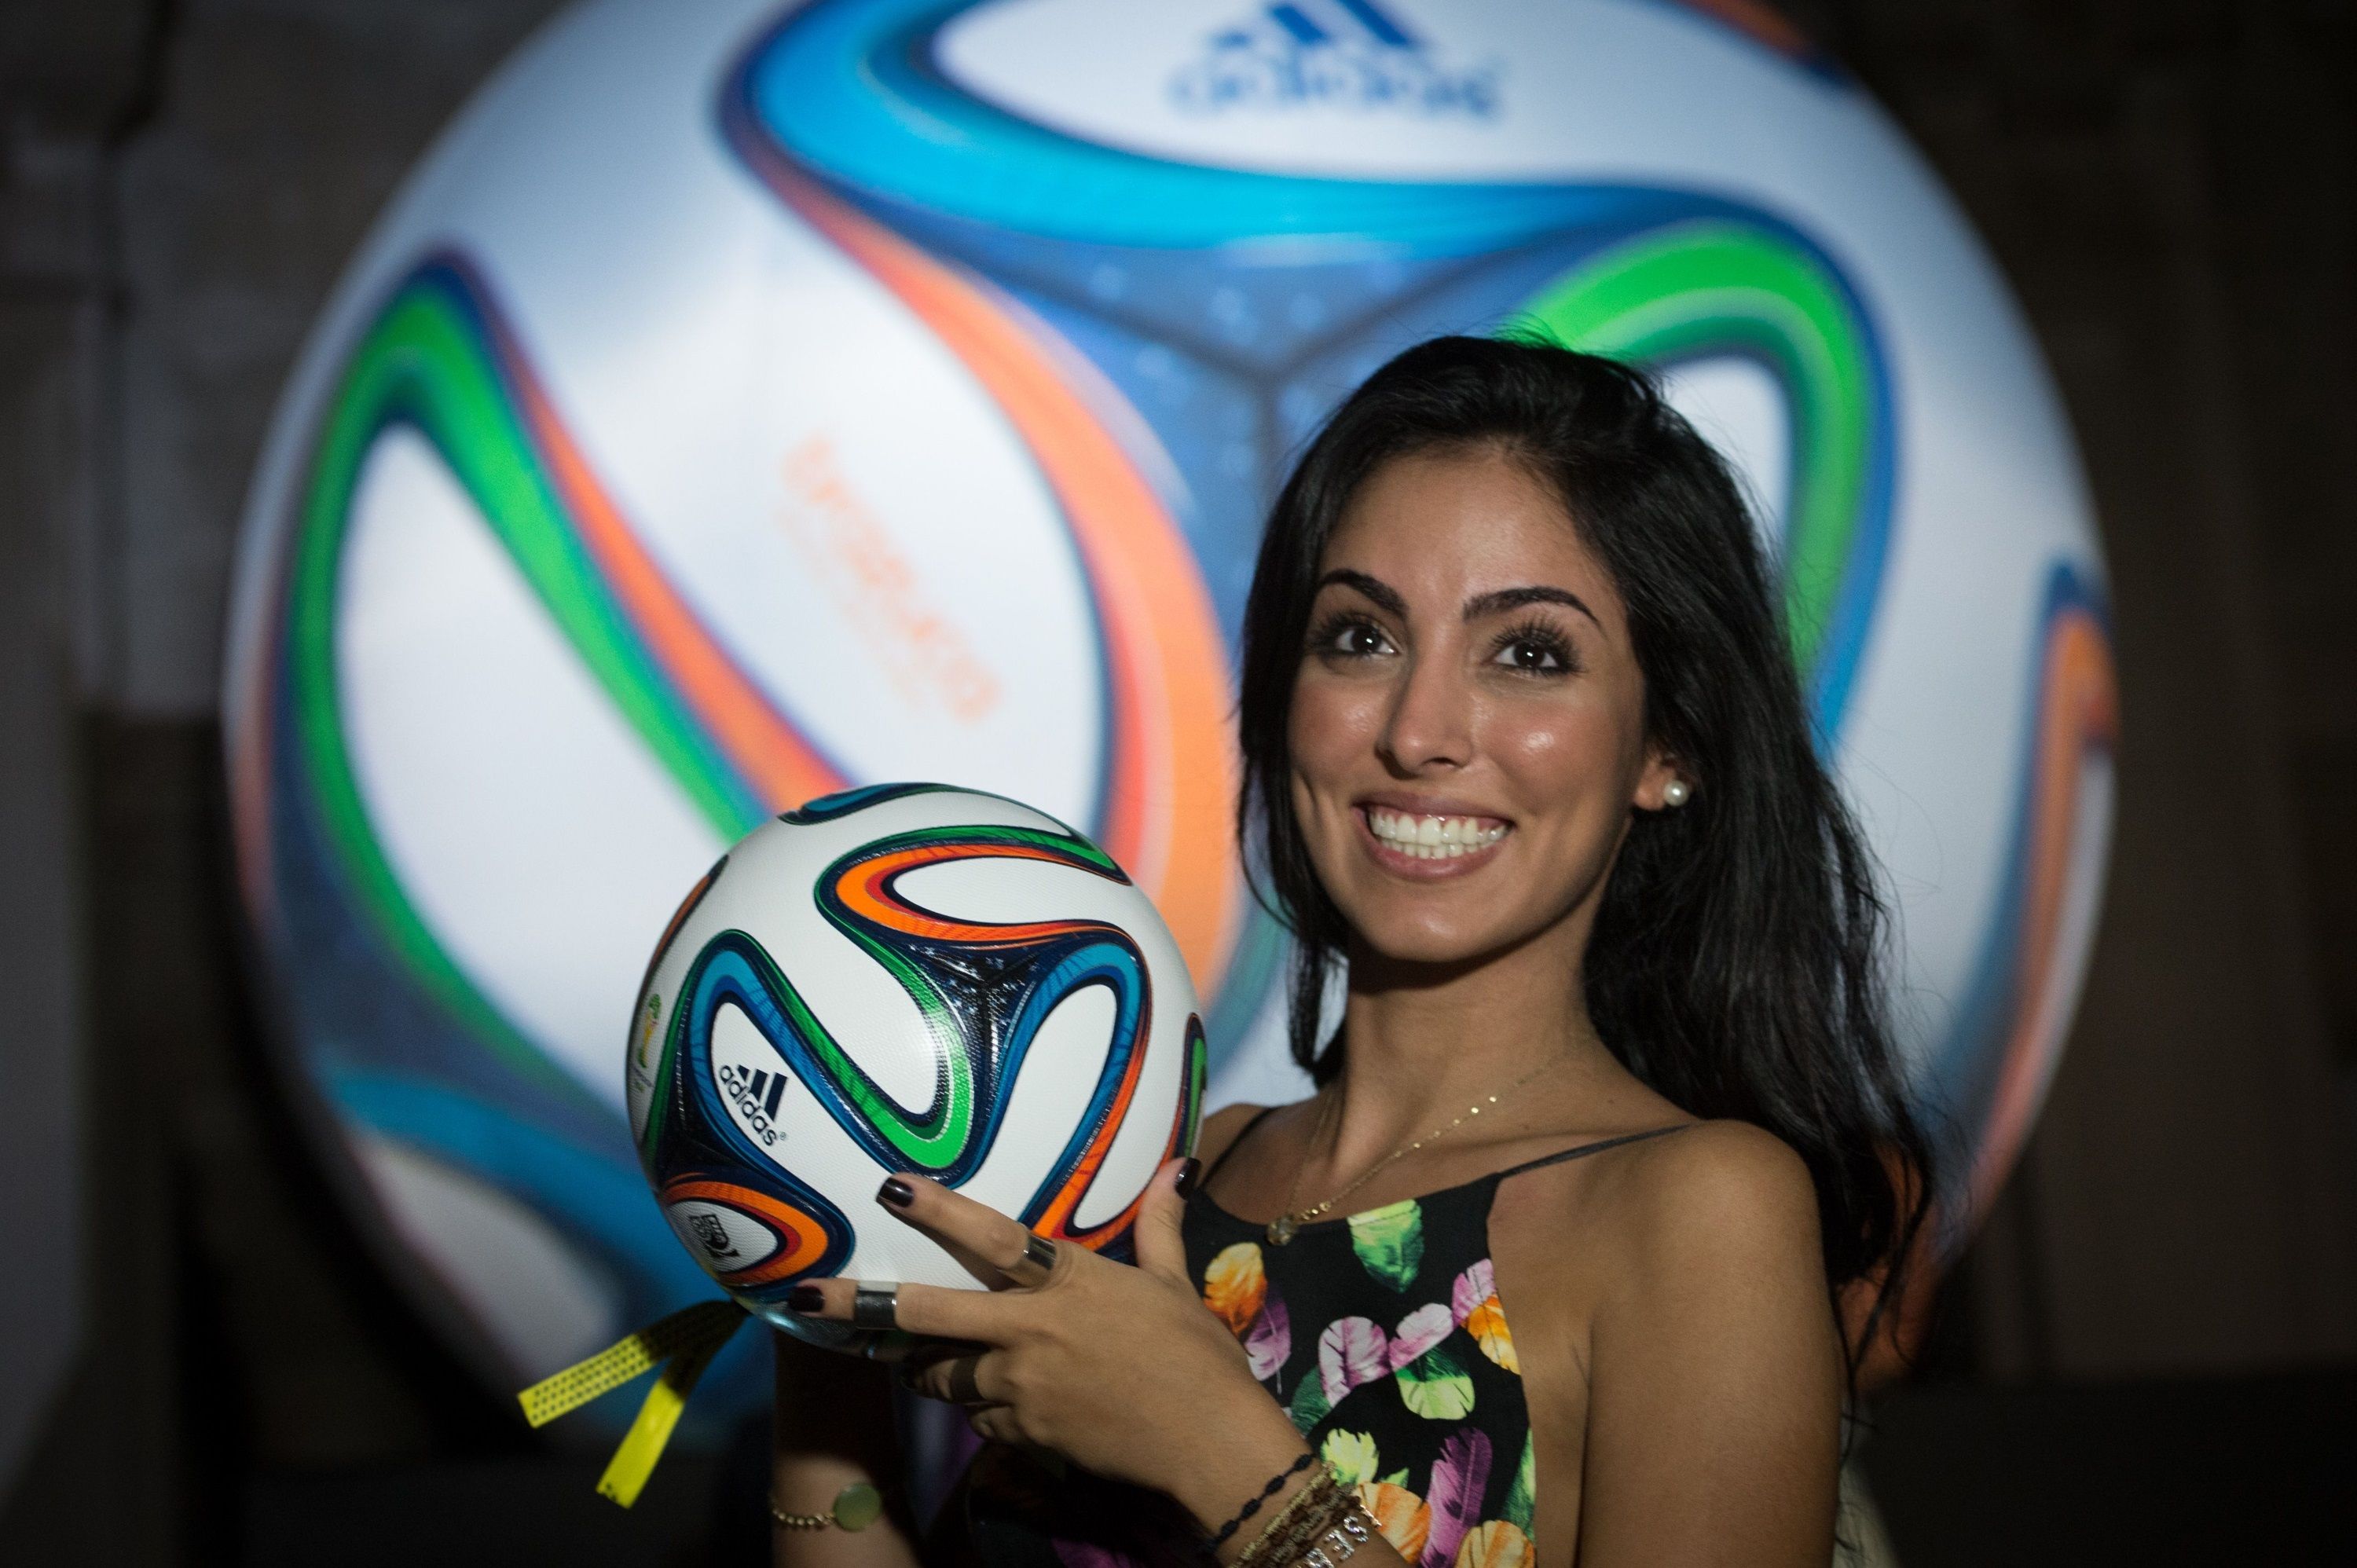 Hot Brazilian Girl FIFA 2014 HD Wallpaper